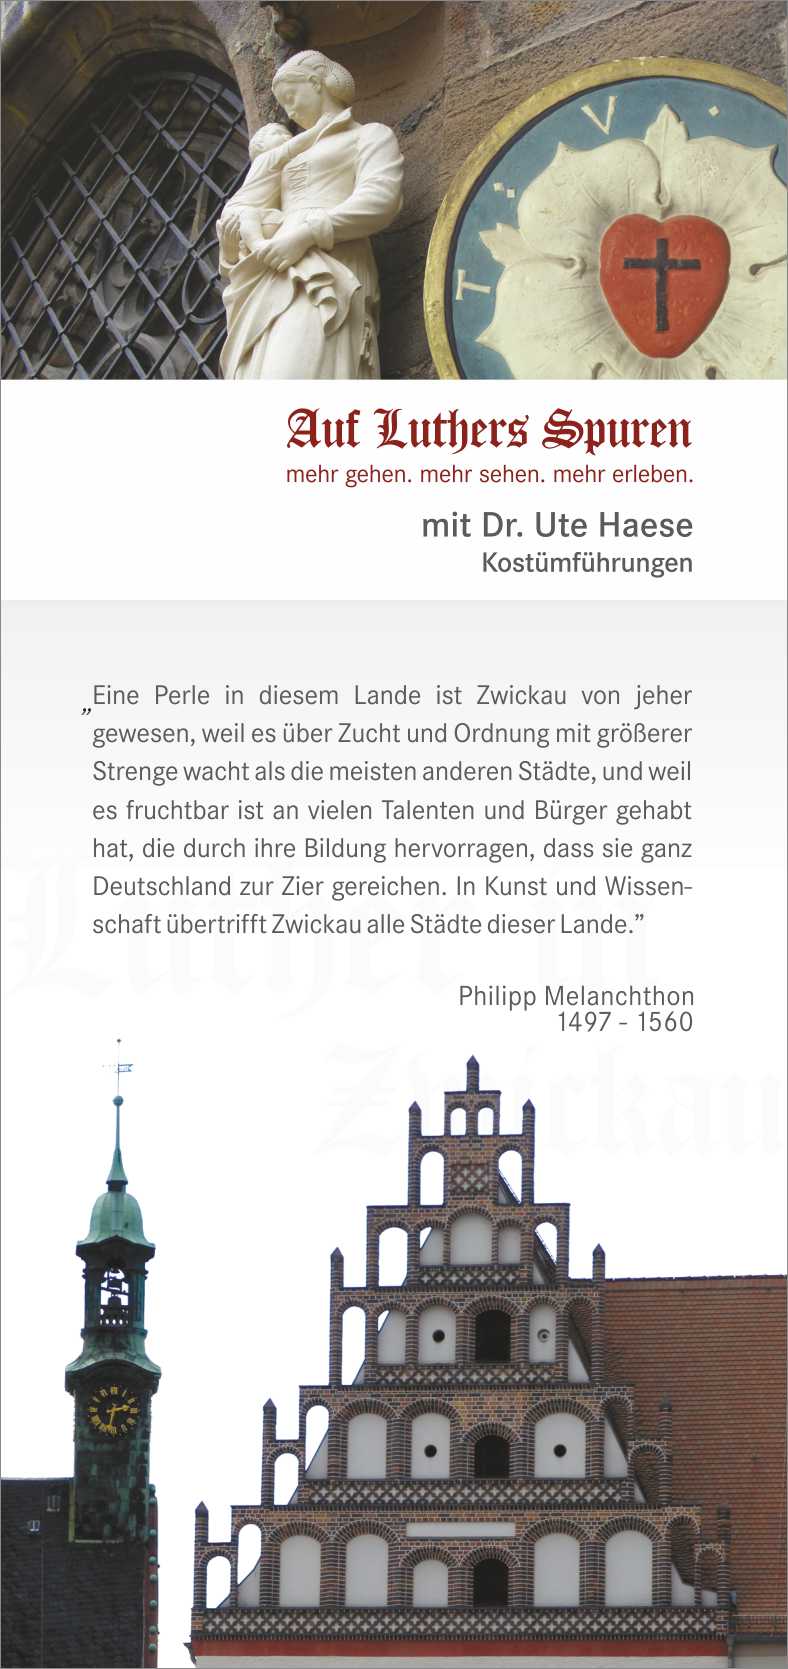 Auf Luthers Spuren in Zwickau, Stadtführung mit Dr. Haese, Flyer mit Spruch von Melanchthon